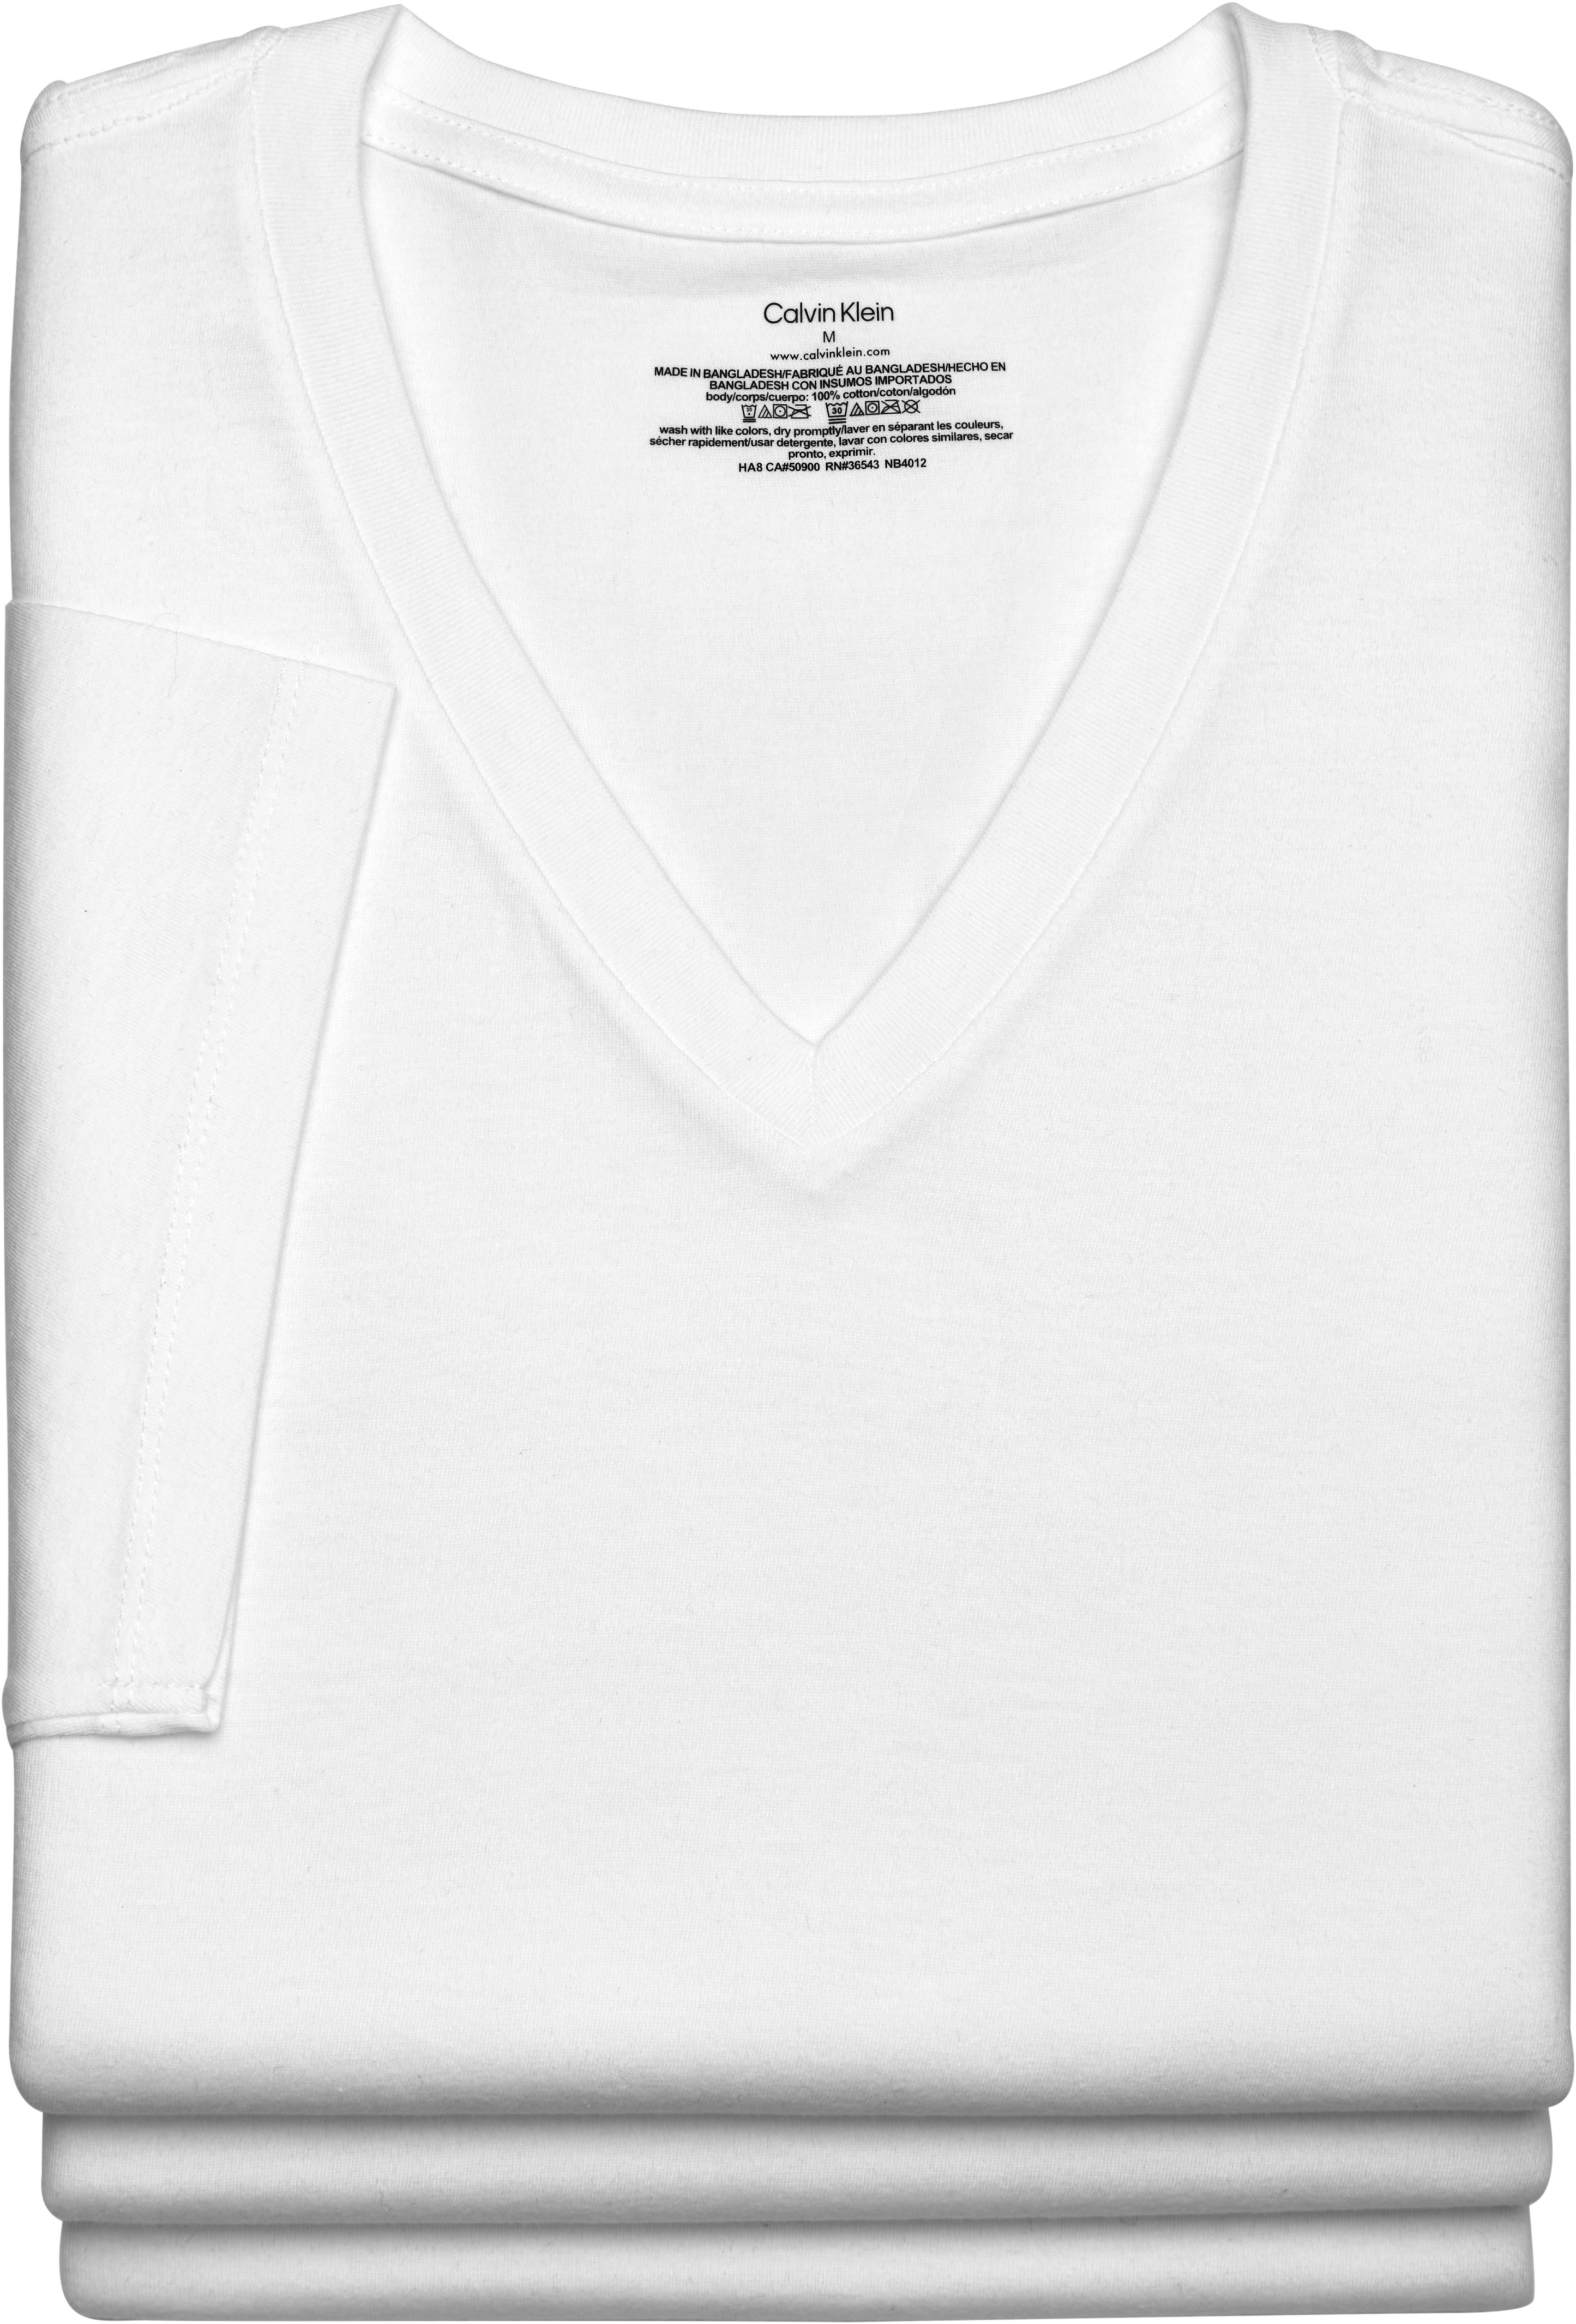 Calvin Klein V-Neck T-Shirt, 3-Pack, White - Men's Shirts | Men's Wearhouse